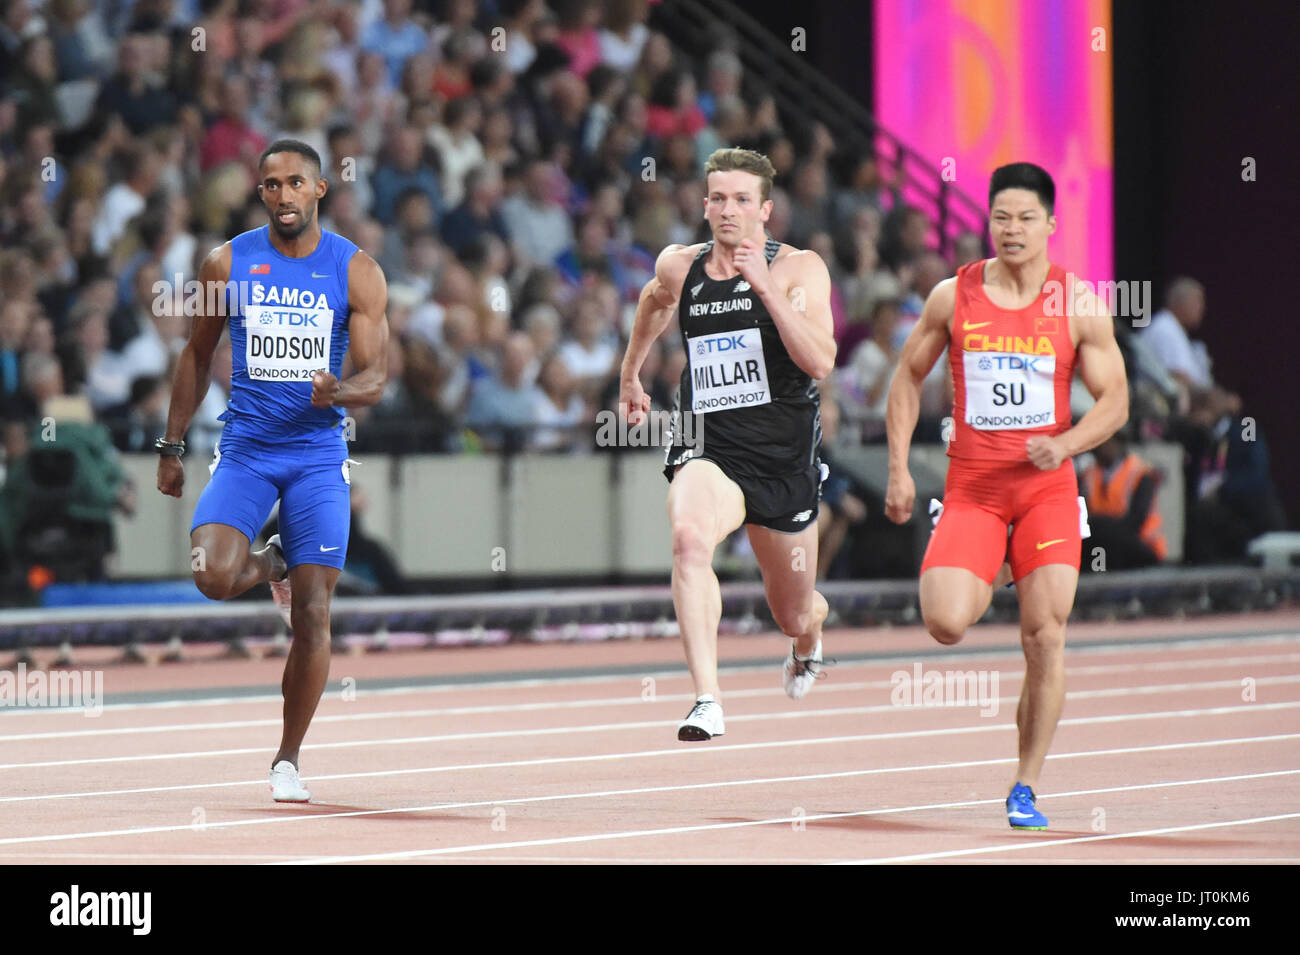 Jeremy DODSON, Samoa, und Joseph MILLAR, New Zealand und Bingtian SU, China, während 100 Meter Runde zuerst im London Stadium in London am 4. August 2017 an die IAAF World Championships Athletics 2017. Stockfoto